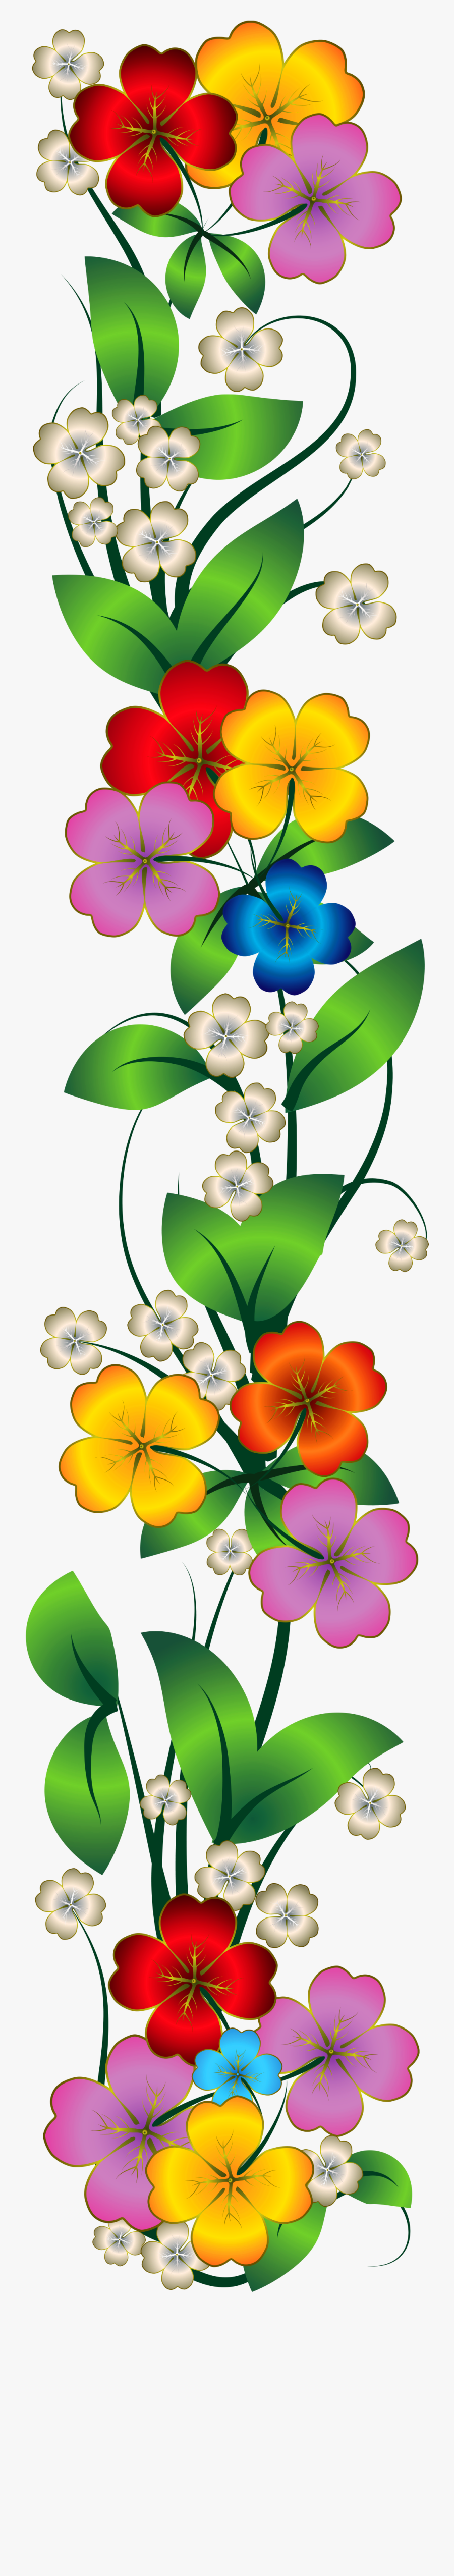 Flower Decoration Clipart, Transparent Clipart